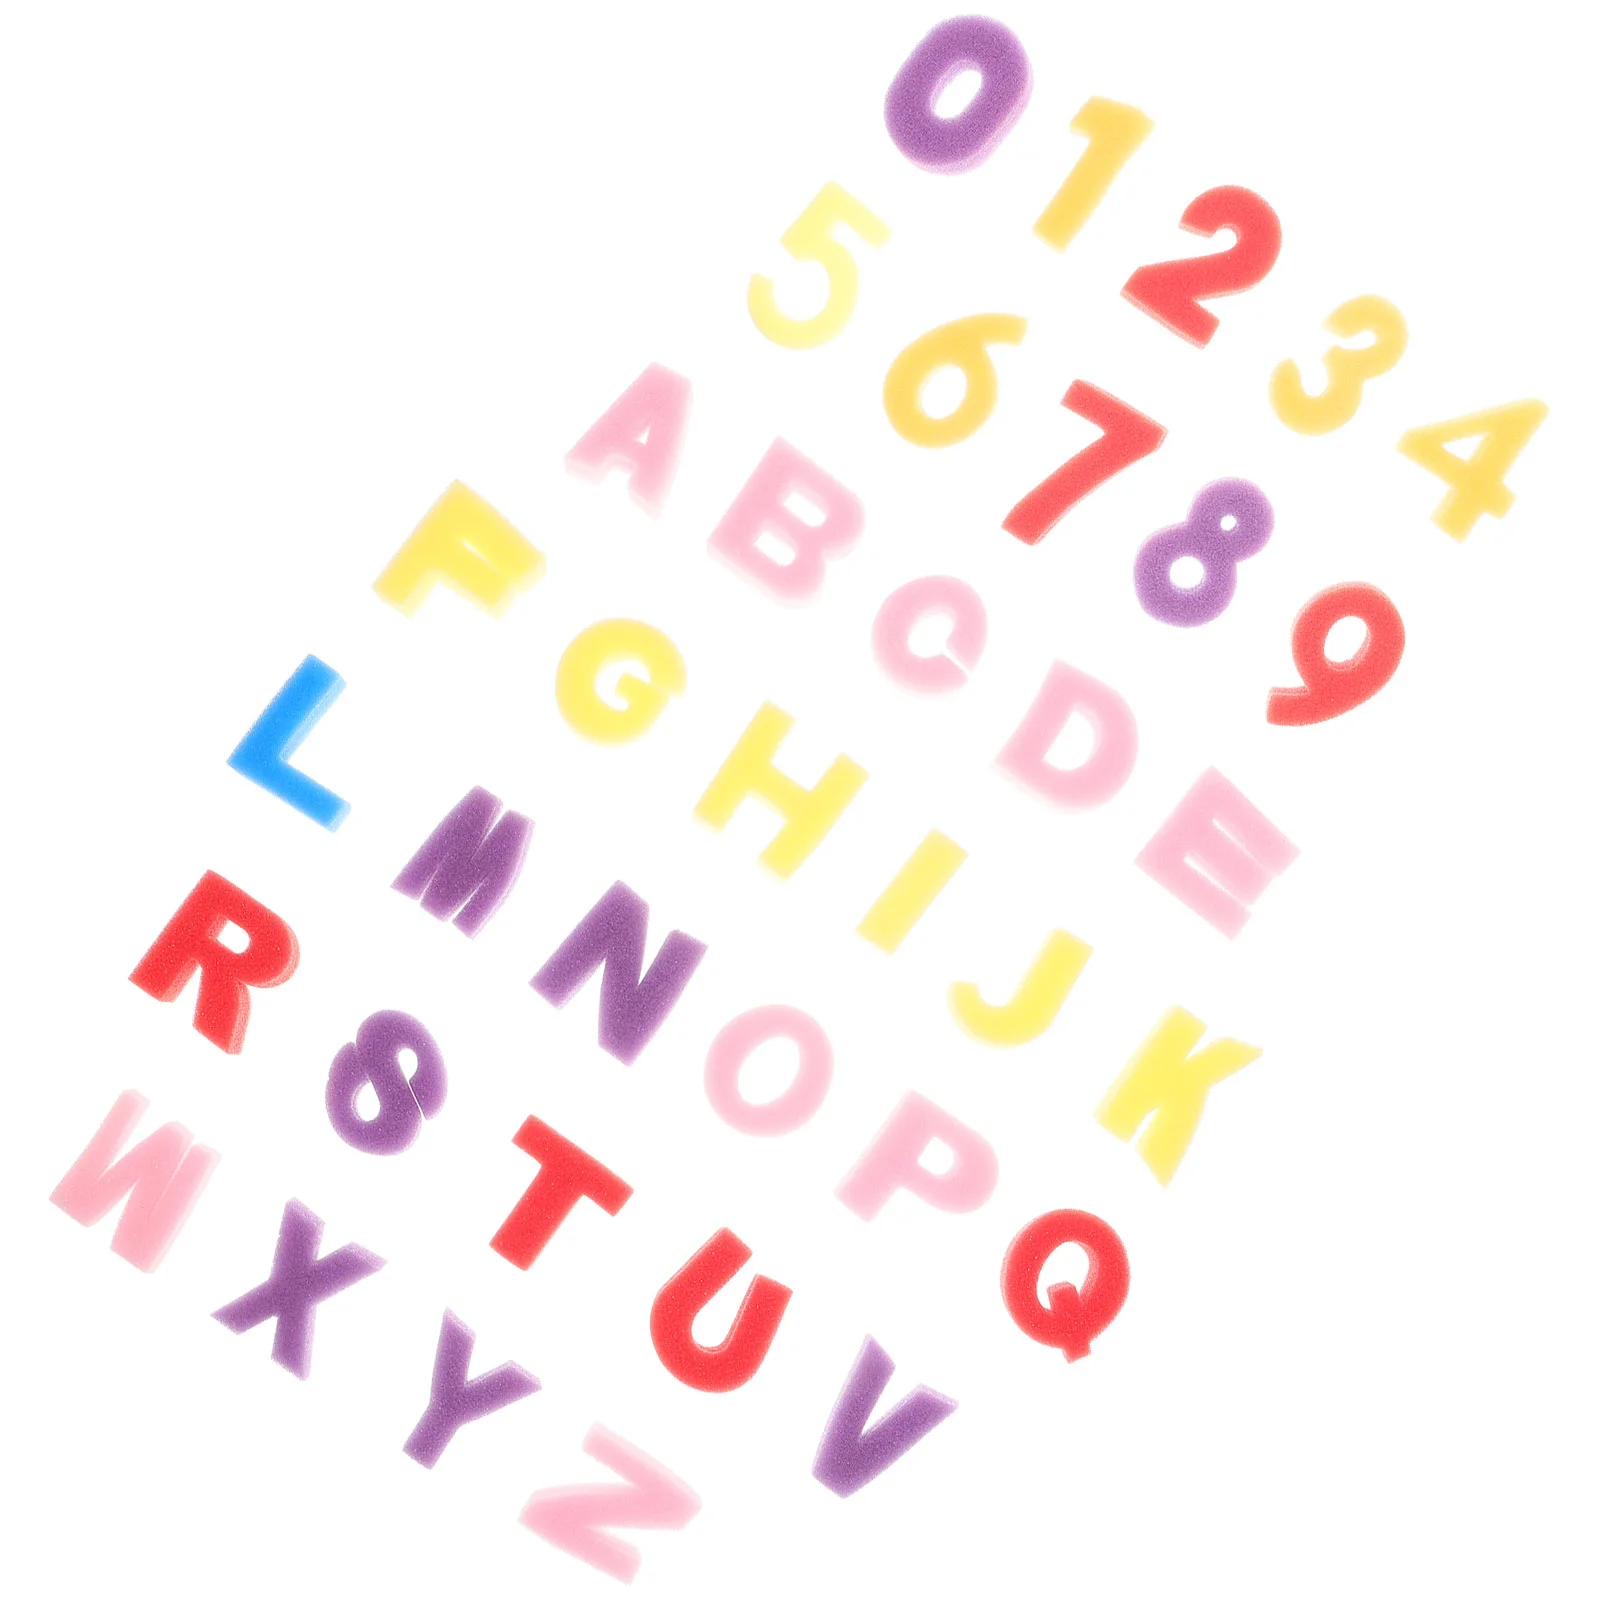 1 Комплект губки для стампинга букв A-Z, инструмент для тиснения граффити, губка для рисования 0-9 номеров (буквы + номер)